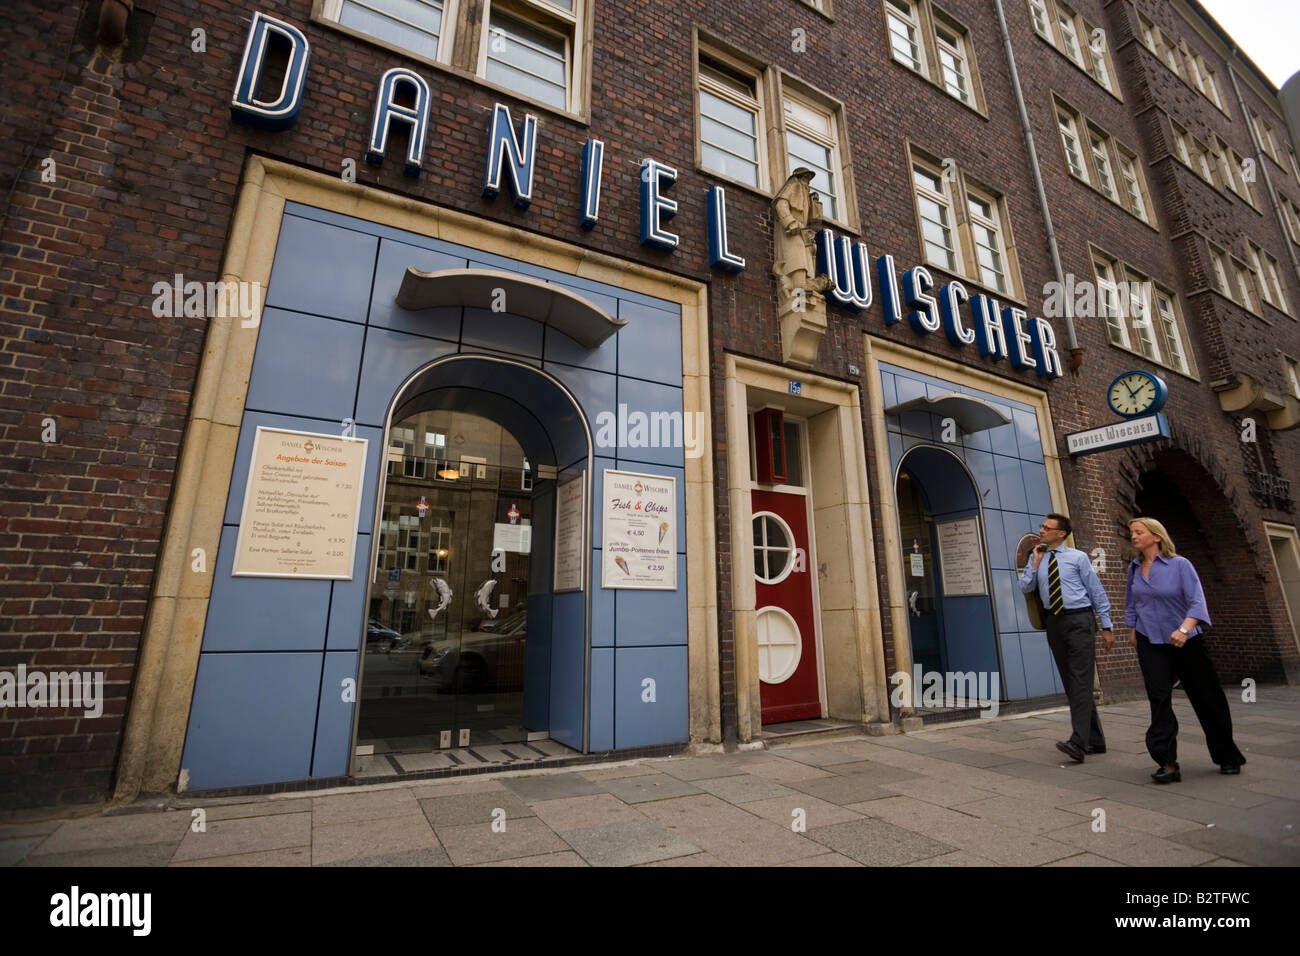 Daniel Wischer Restaurant, paar vorbei Daniel Wischer Restaurant, der  ältesten Fisch Restaurant Hamburg, Hamburg, Deutschland Stockfotografie -  Alamy